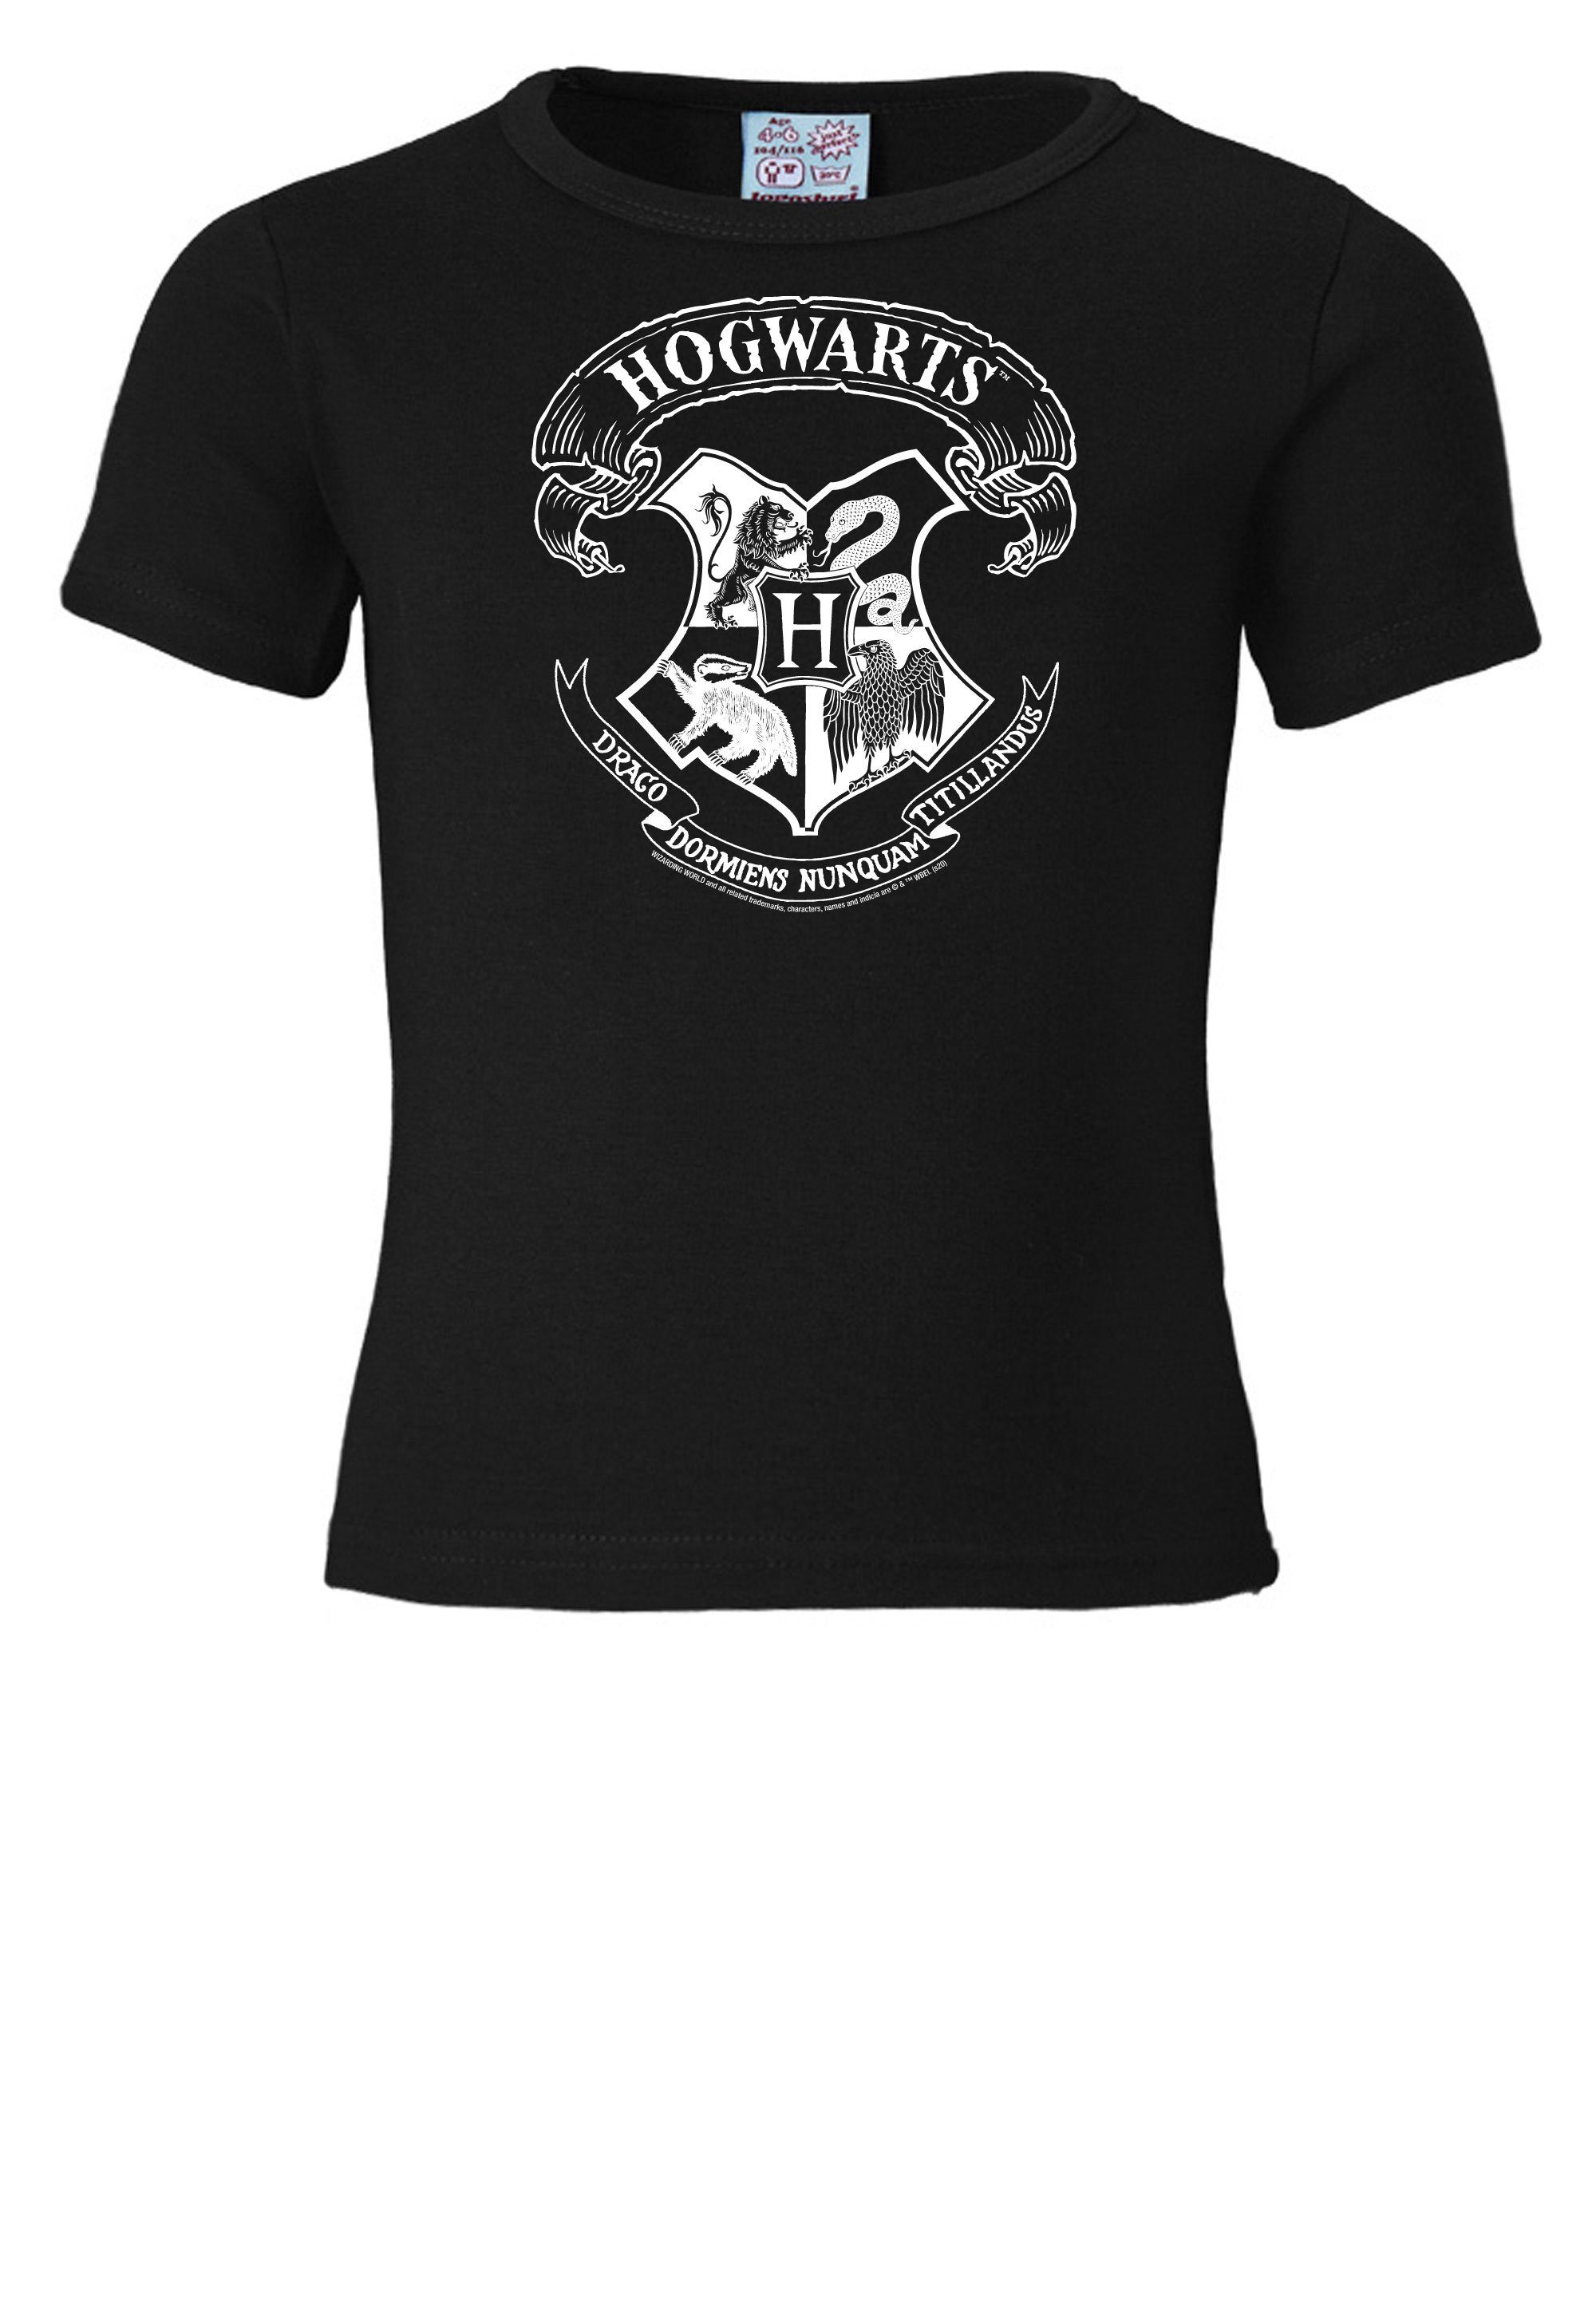 Potter LOGOSHIRT Hogwarts Originaldesign Logo lizenziertem T-Shirt mit Harry - (Weiß)